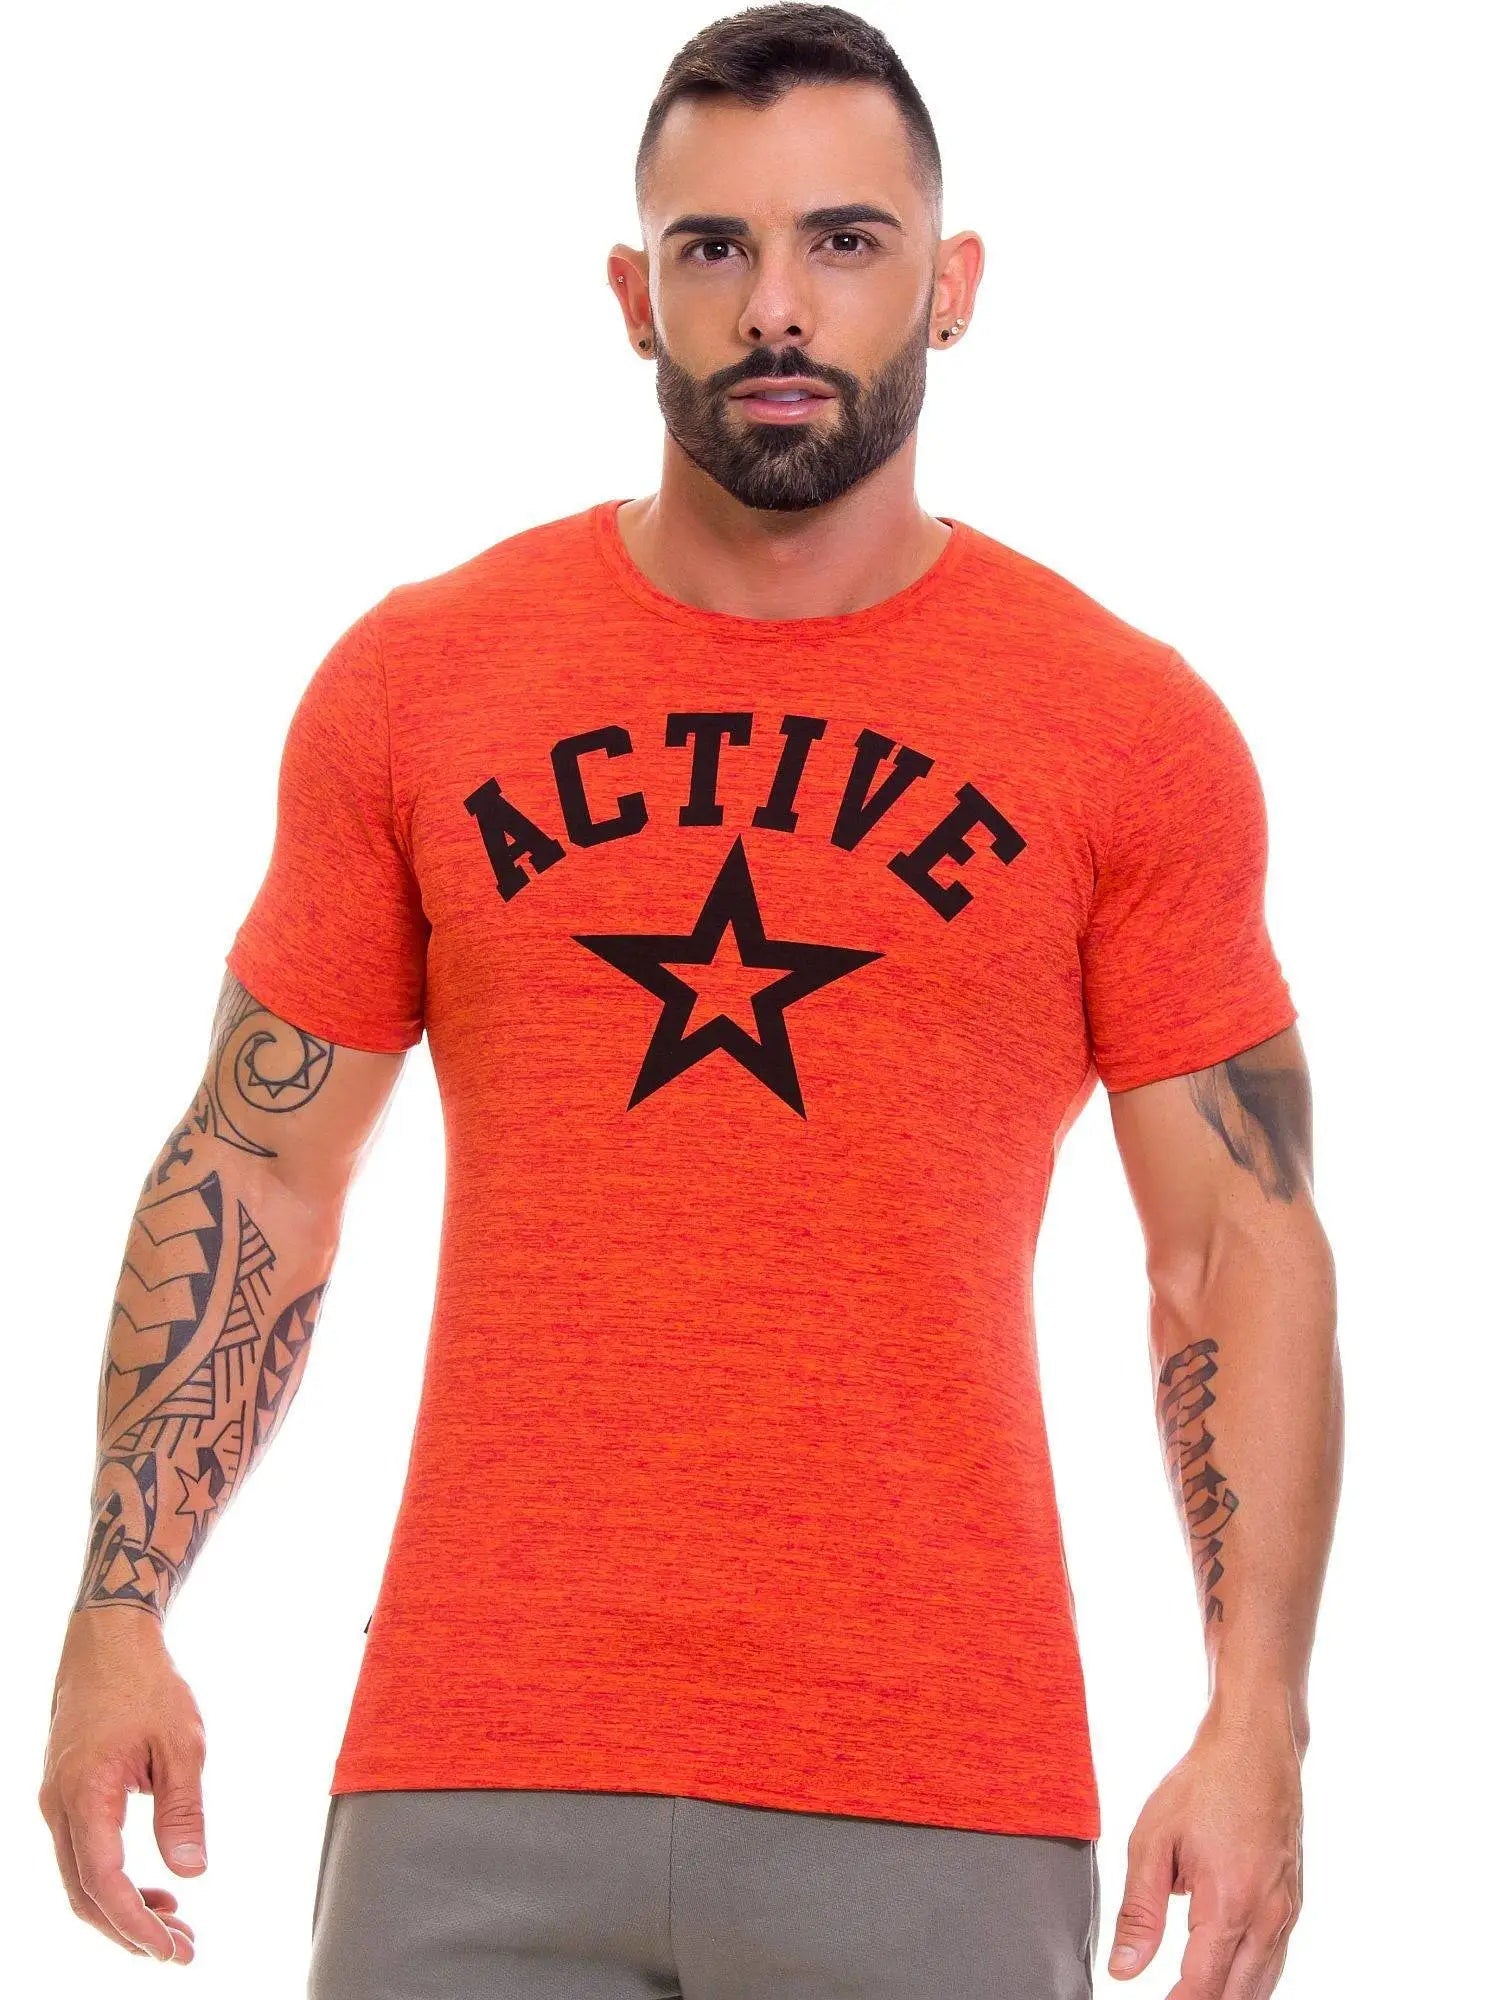 JOR 0690 ACTIVE Muscle T-Shirt Sport Fitness Gym Muscleshirt Trainingsshirt - noodosz